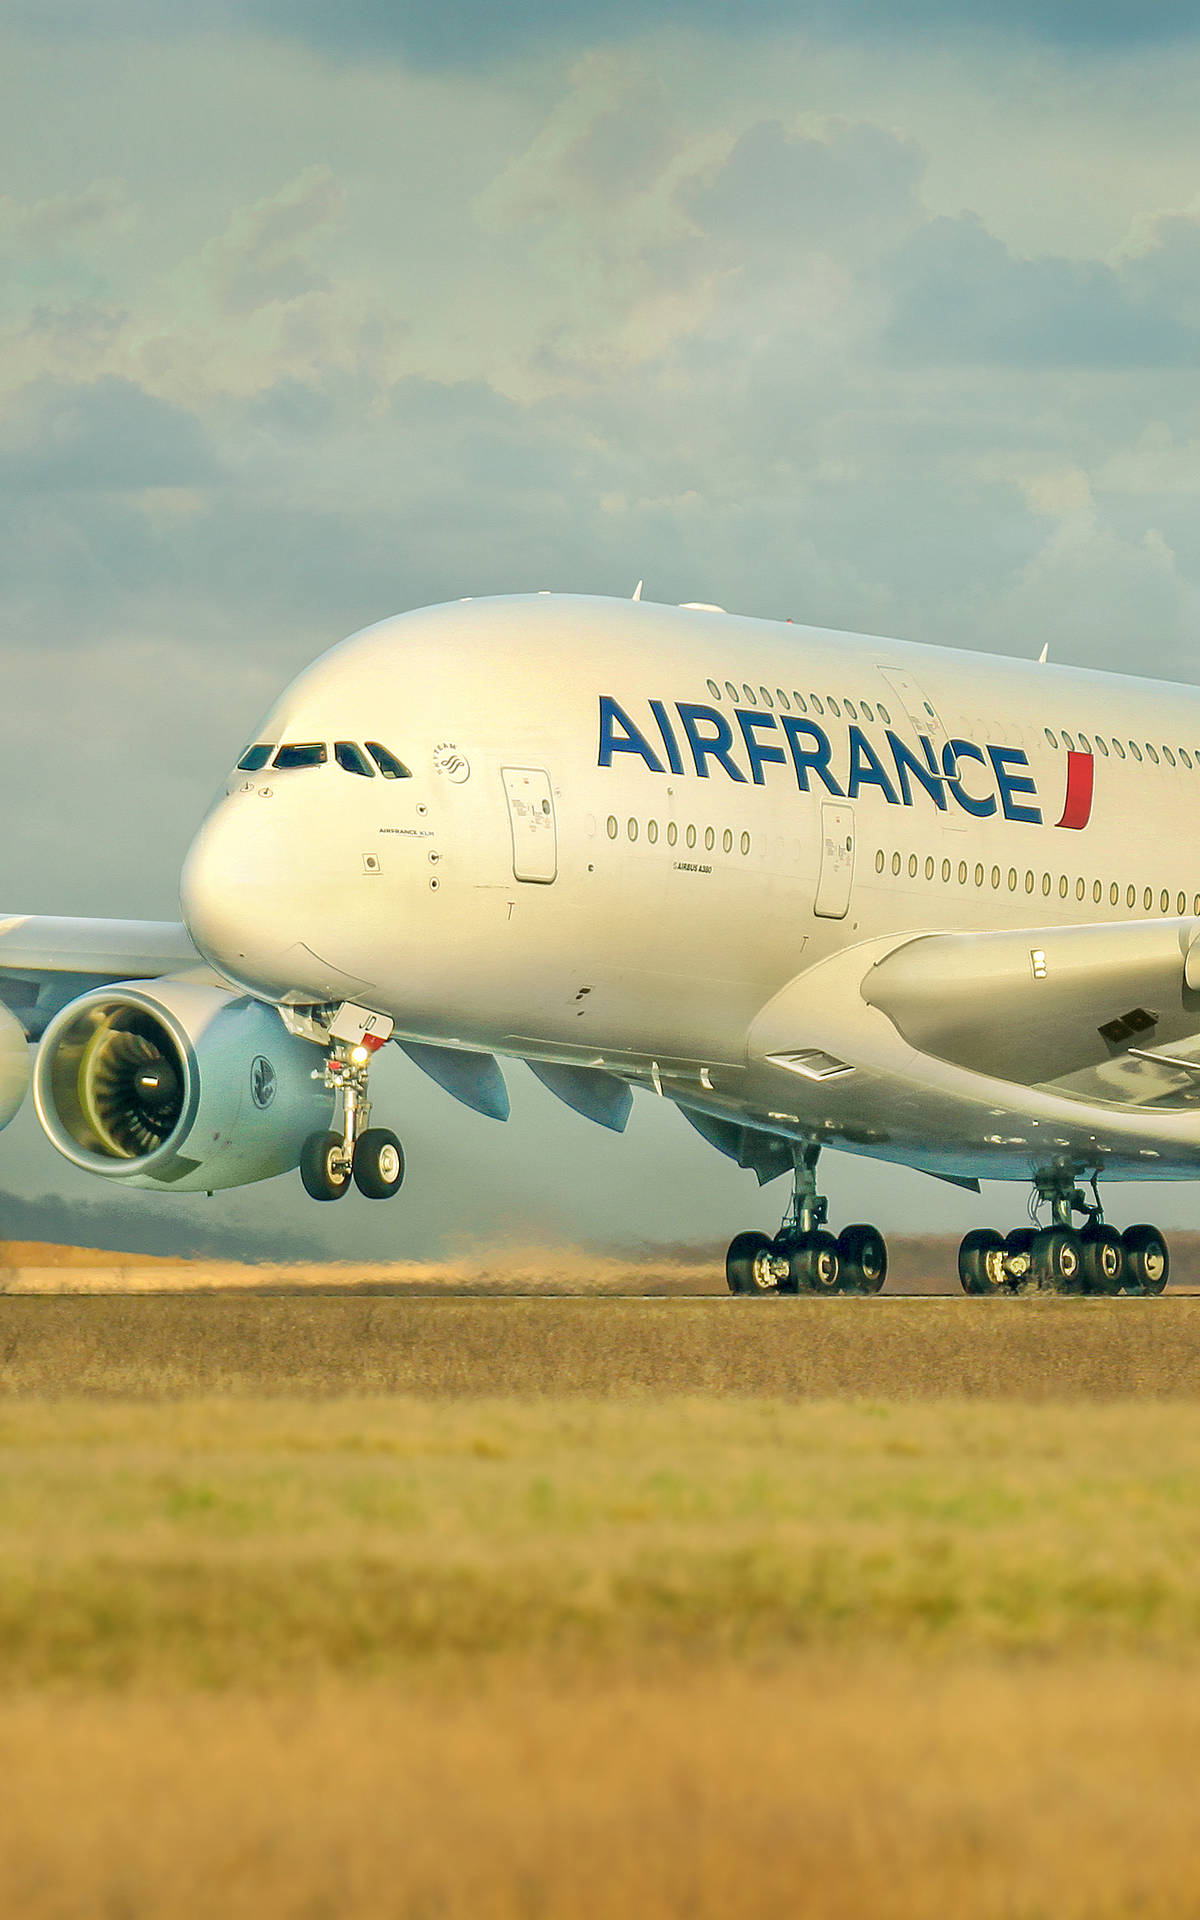 Airfrance Compagnia Aerea Airbus A380 In Pista Sfondo